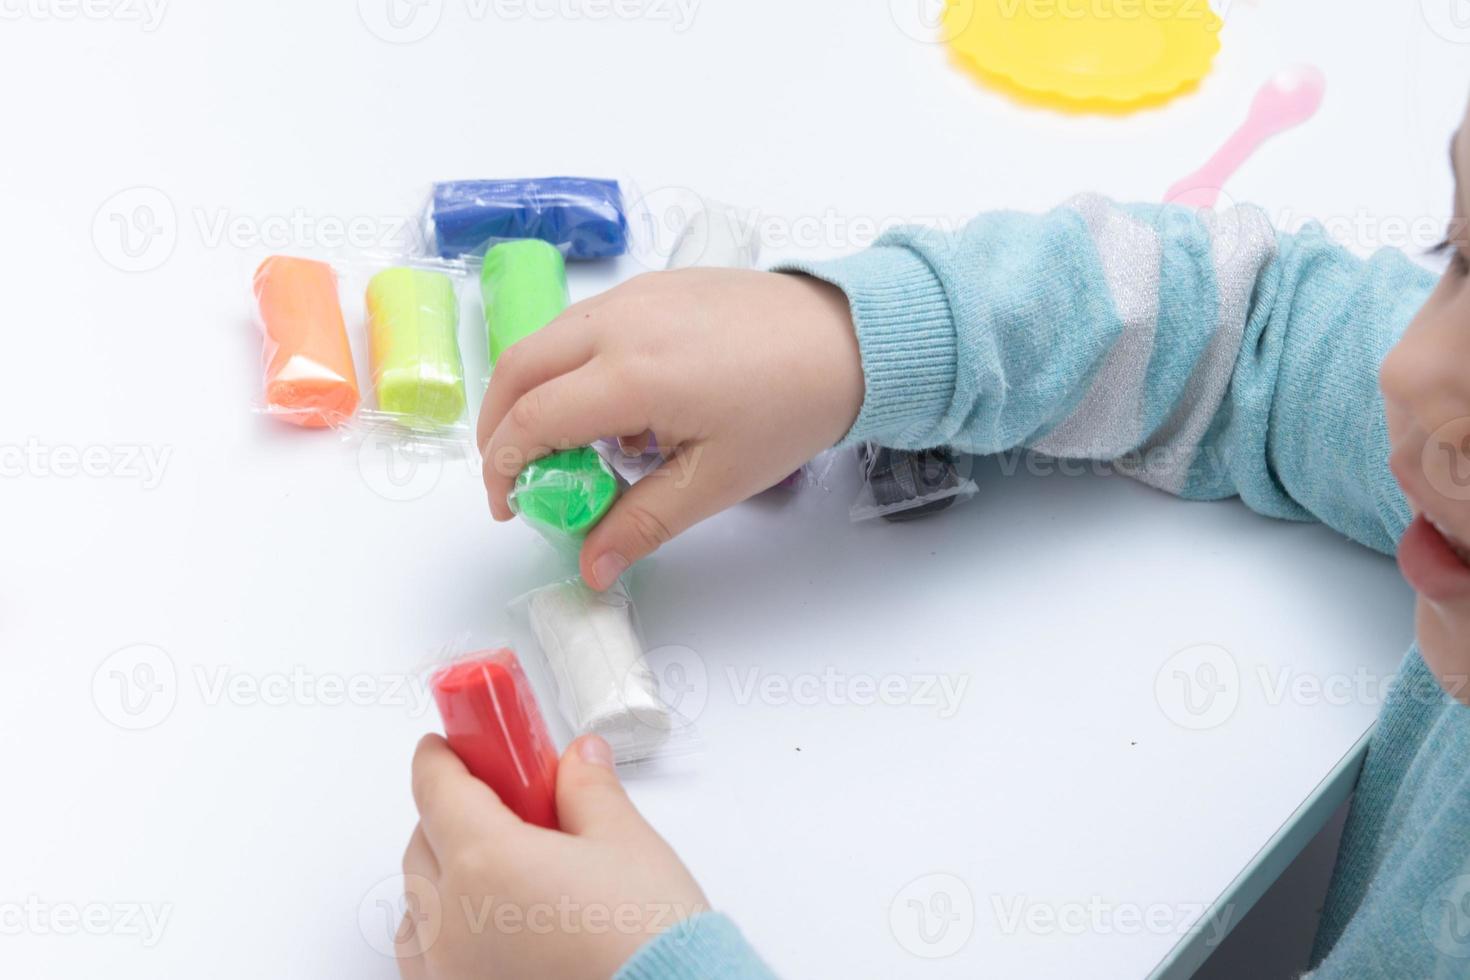 kinderhanden spelen deeg voor de creativiteit van kinderen. bordspel voor de ontwikkeling van fijne motoriek foto